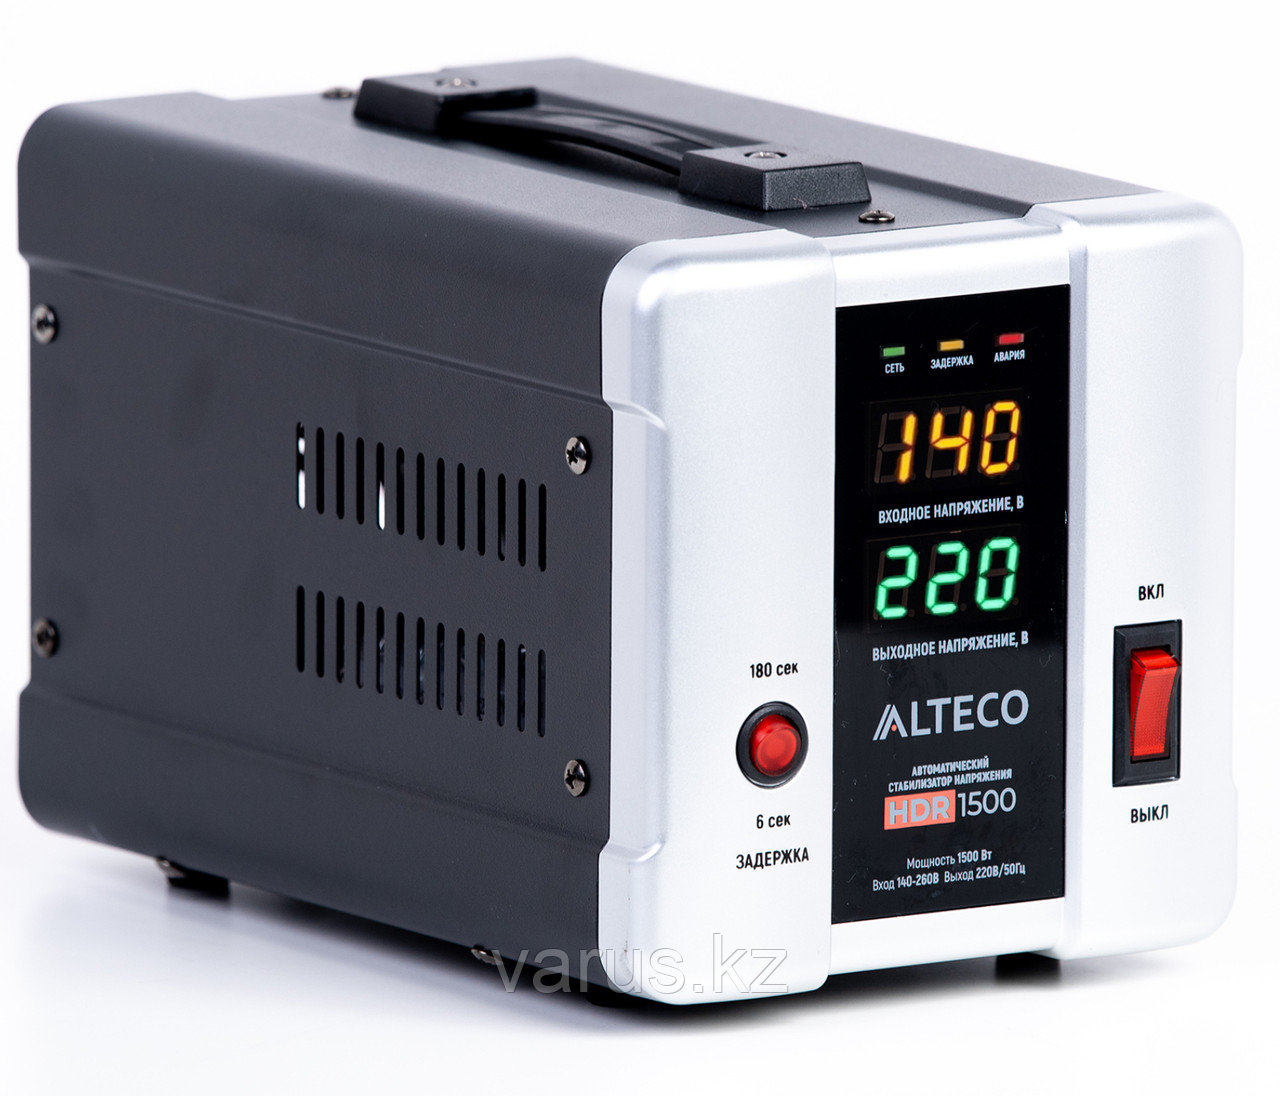 Автоматический стабилизатор напряжения Alteco HDR 1500, фото 1